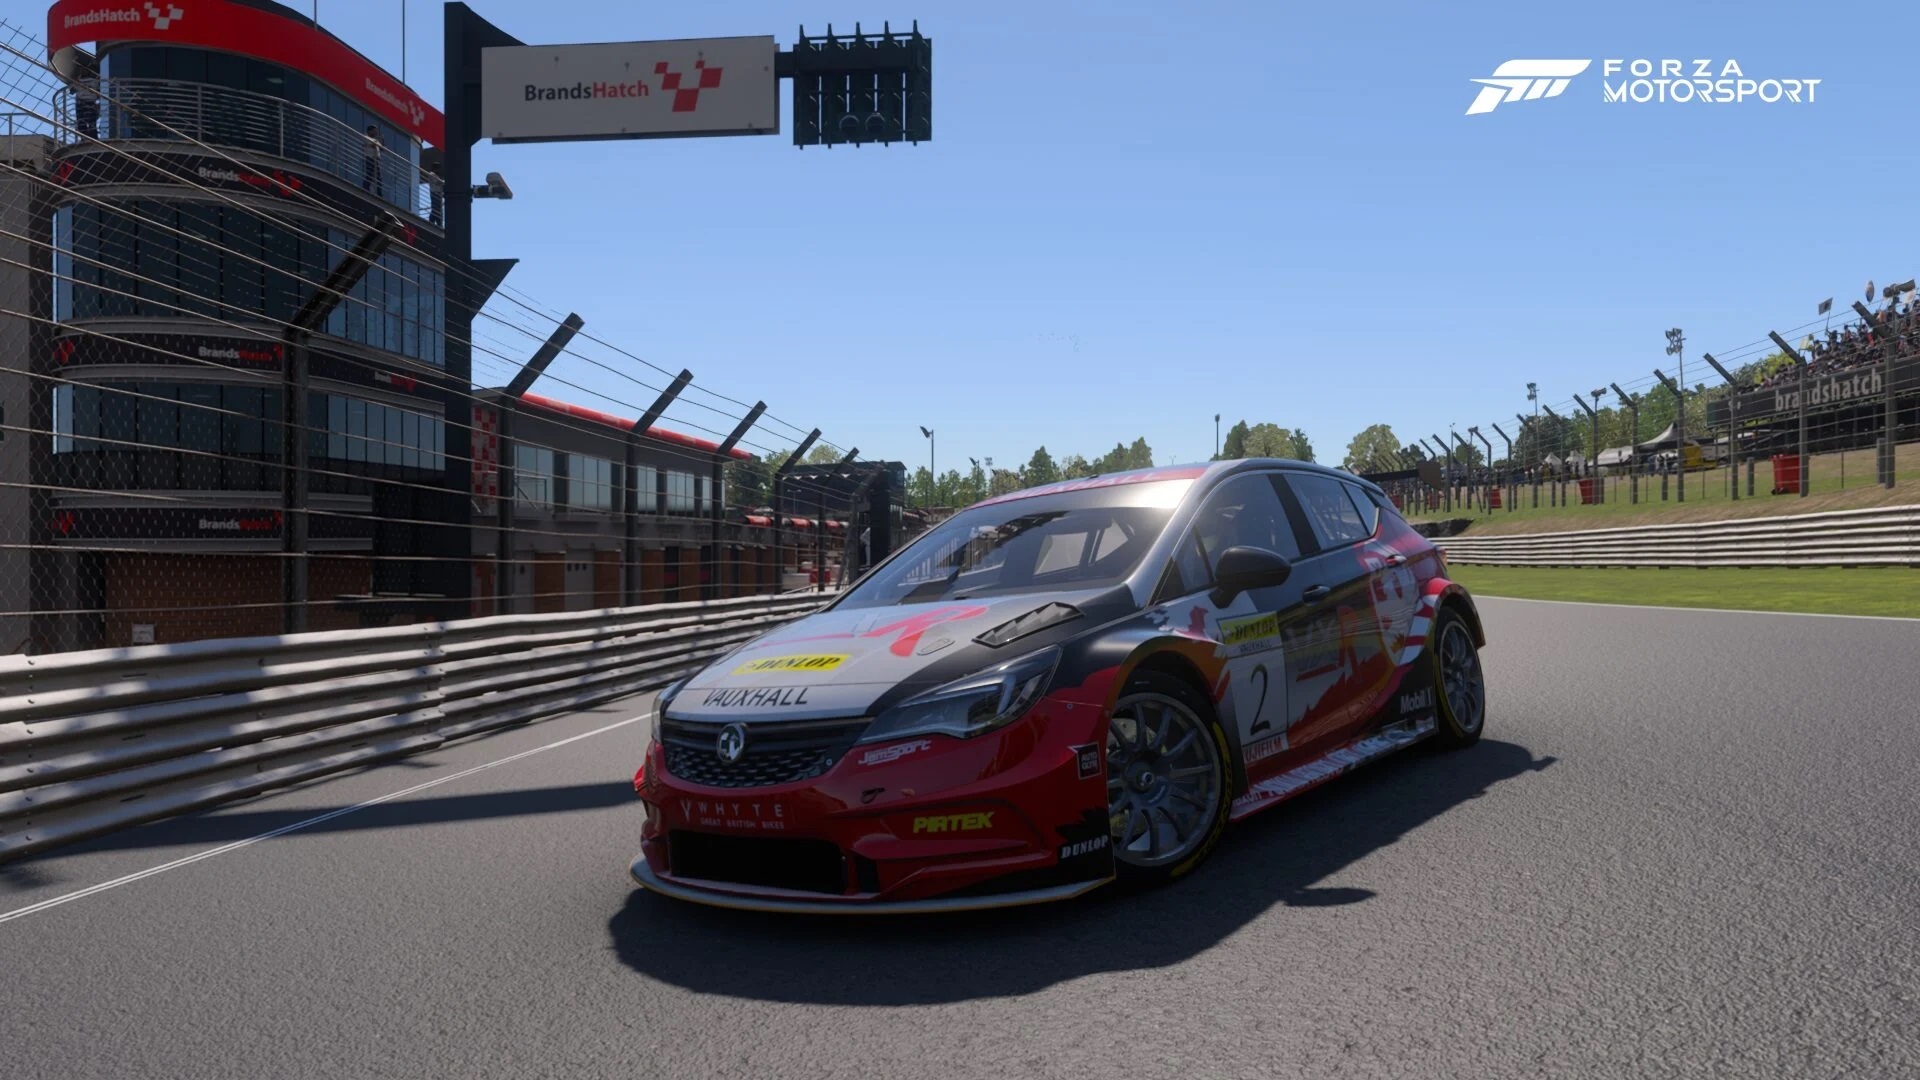 Forza Motorsport-ում նոր մրցուղի և մեքենաներ են հայտնվել